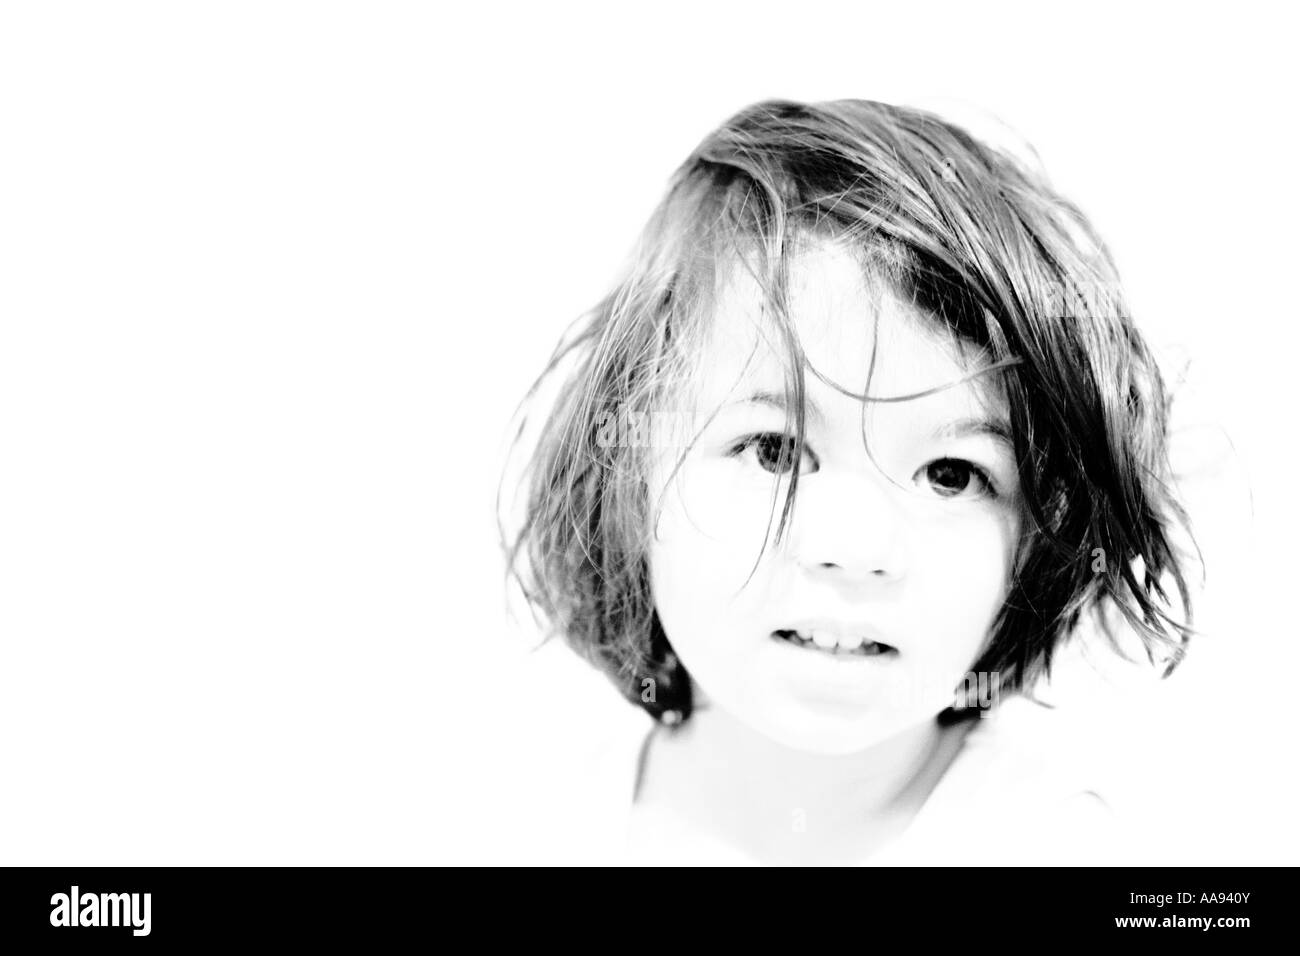 Tête et épaules high key portrait d'une jeune fille, noir et blanc Banque D'Images